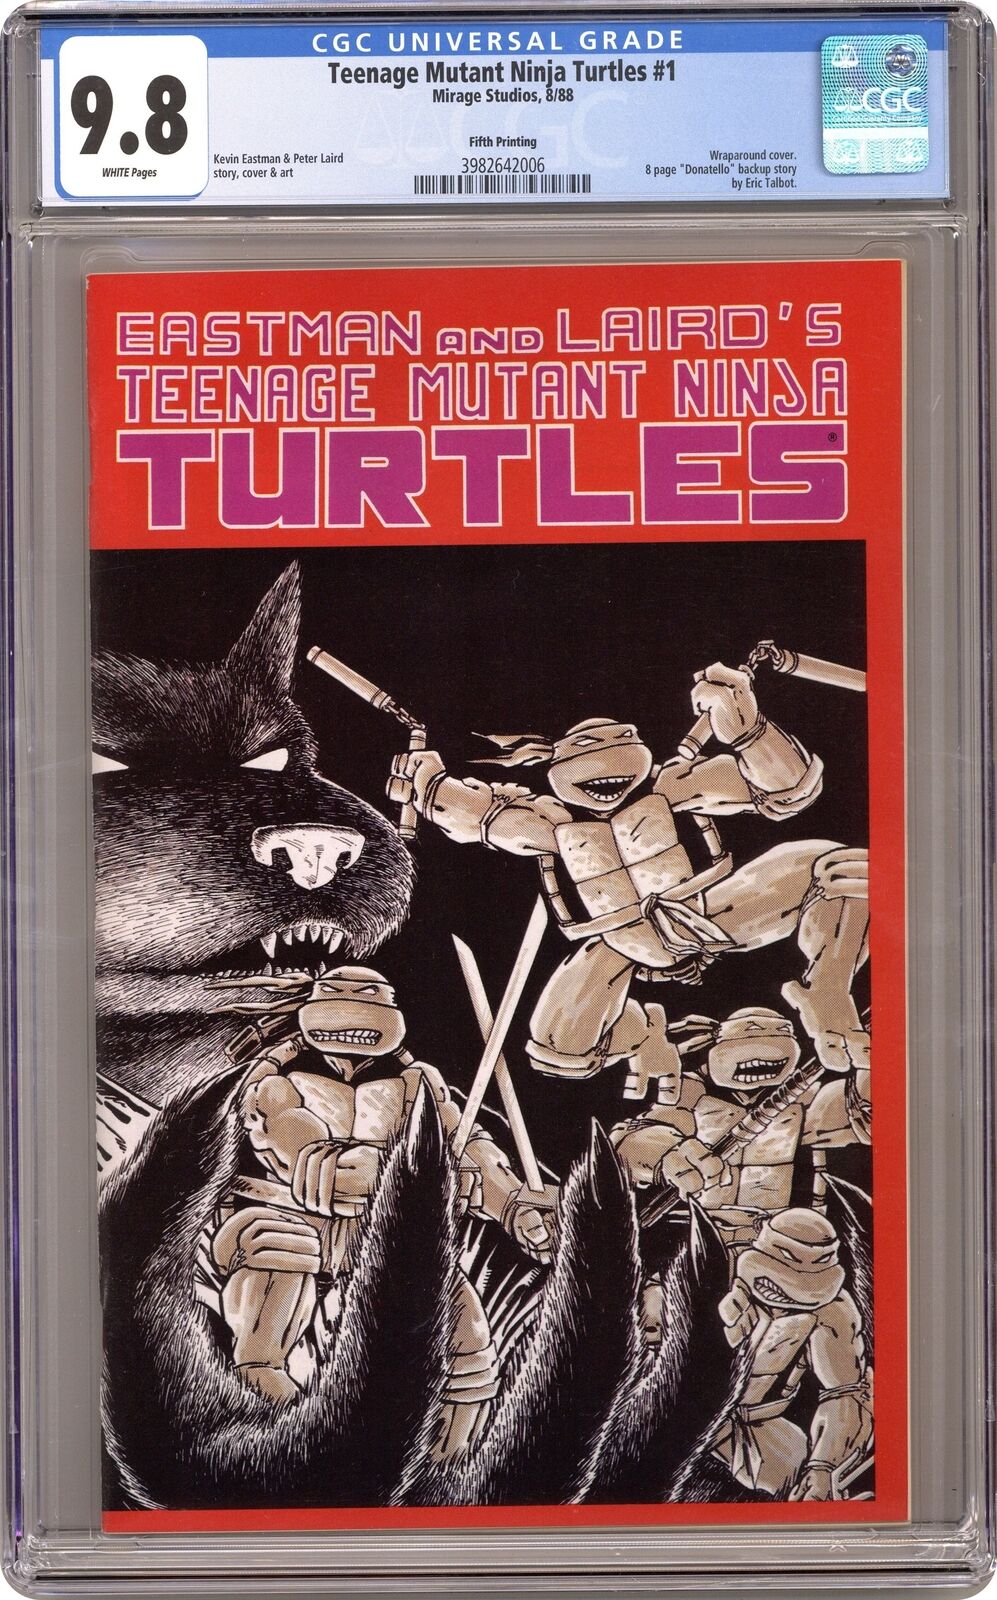 Teenage Mutant Ninja Turtles #1 5th Printing CGC 9.8 1988 3982642006